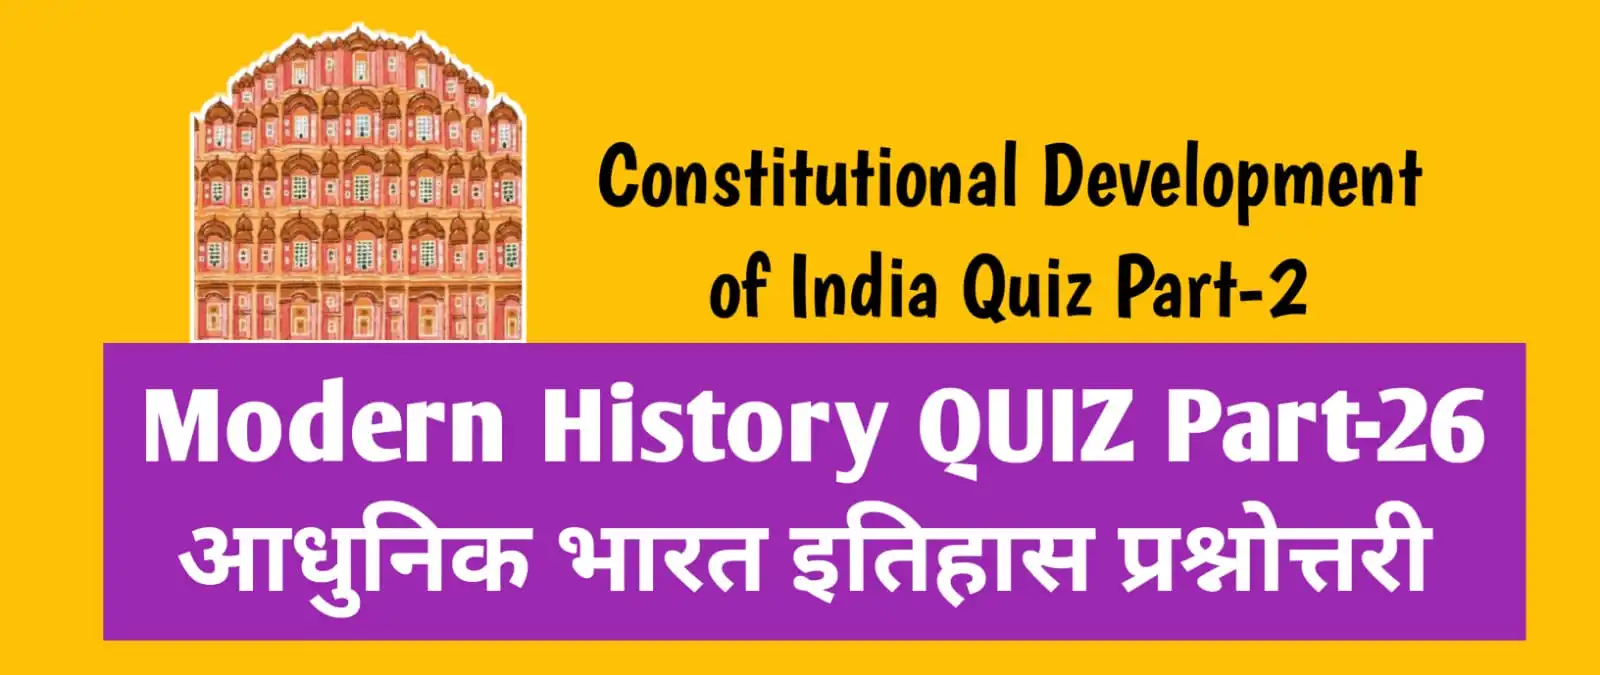 Constitutional Development of India Quiz Part-2